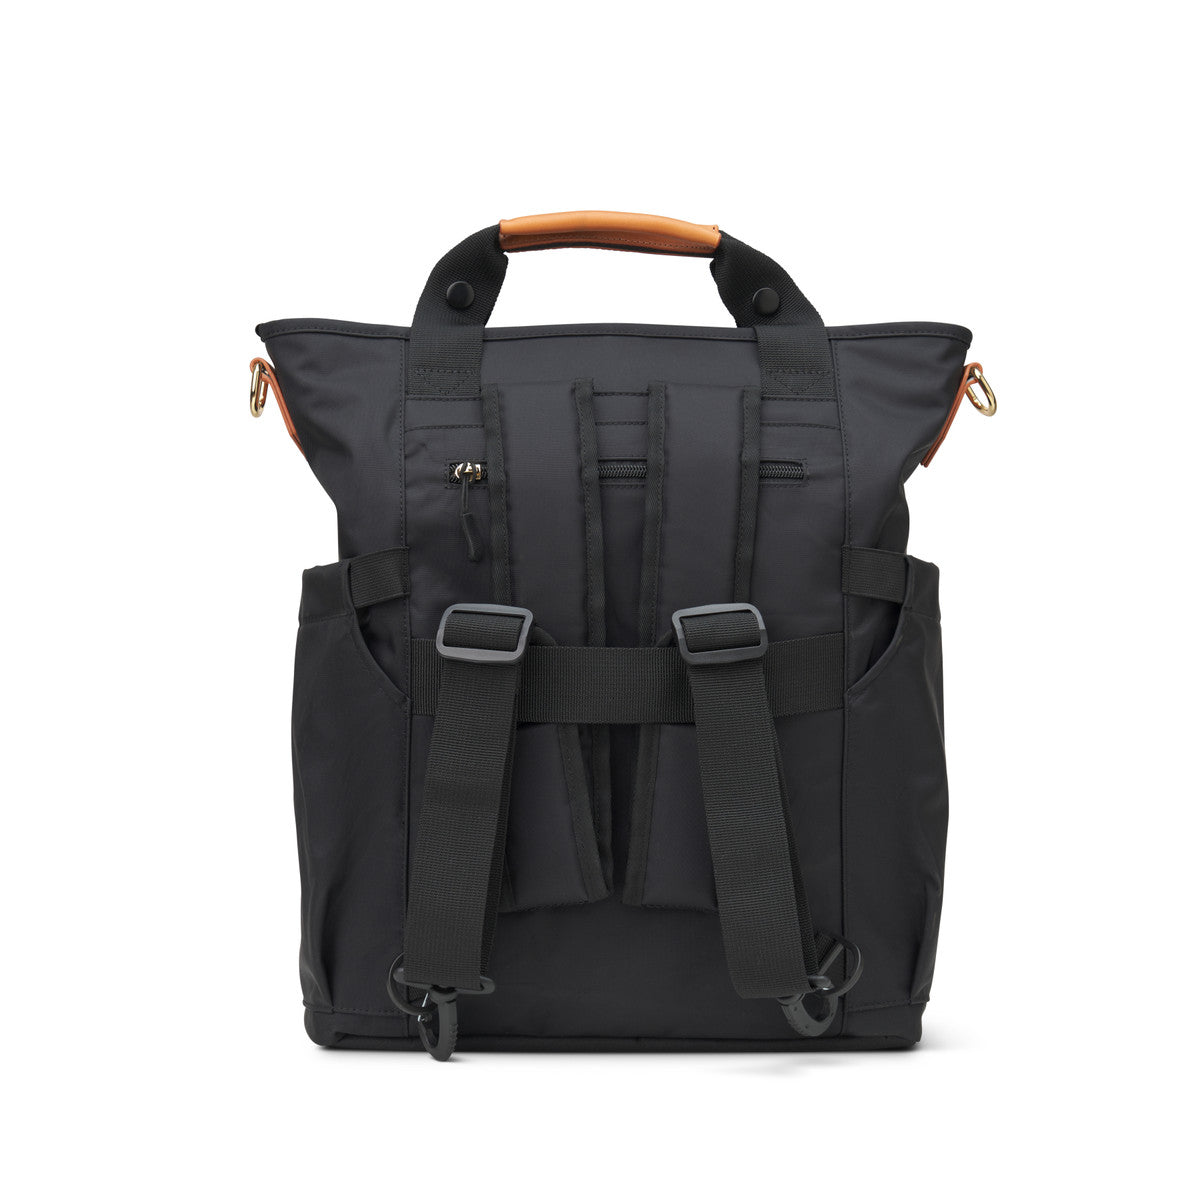 Brooklyn Convertible Laptop Backpack - Black (Ships in 1-2 Weeks)